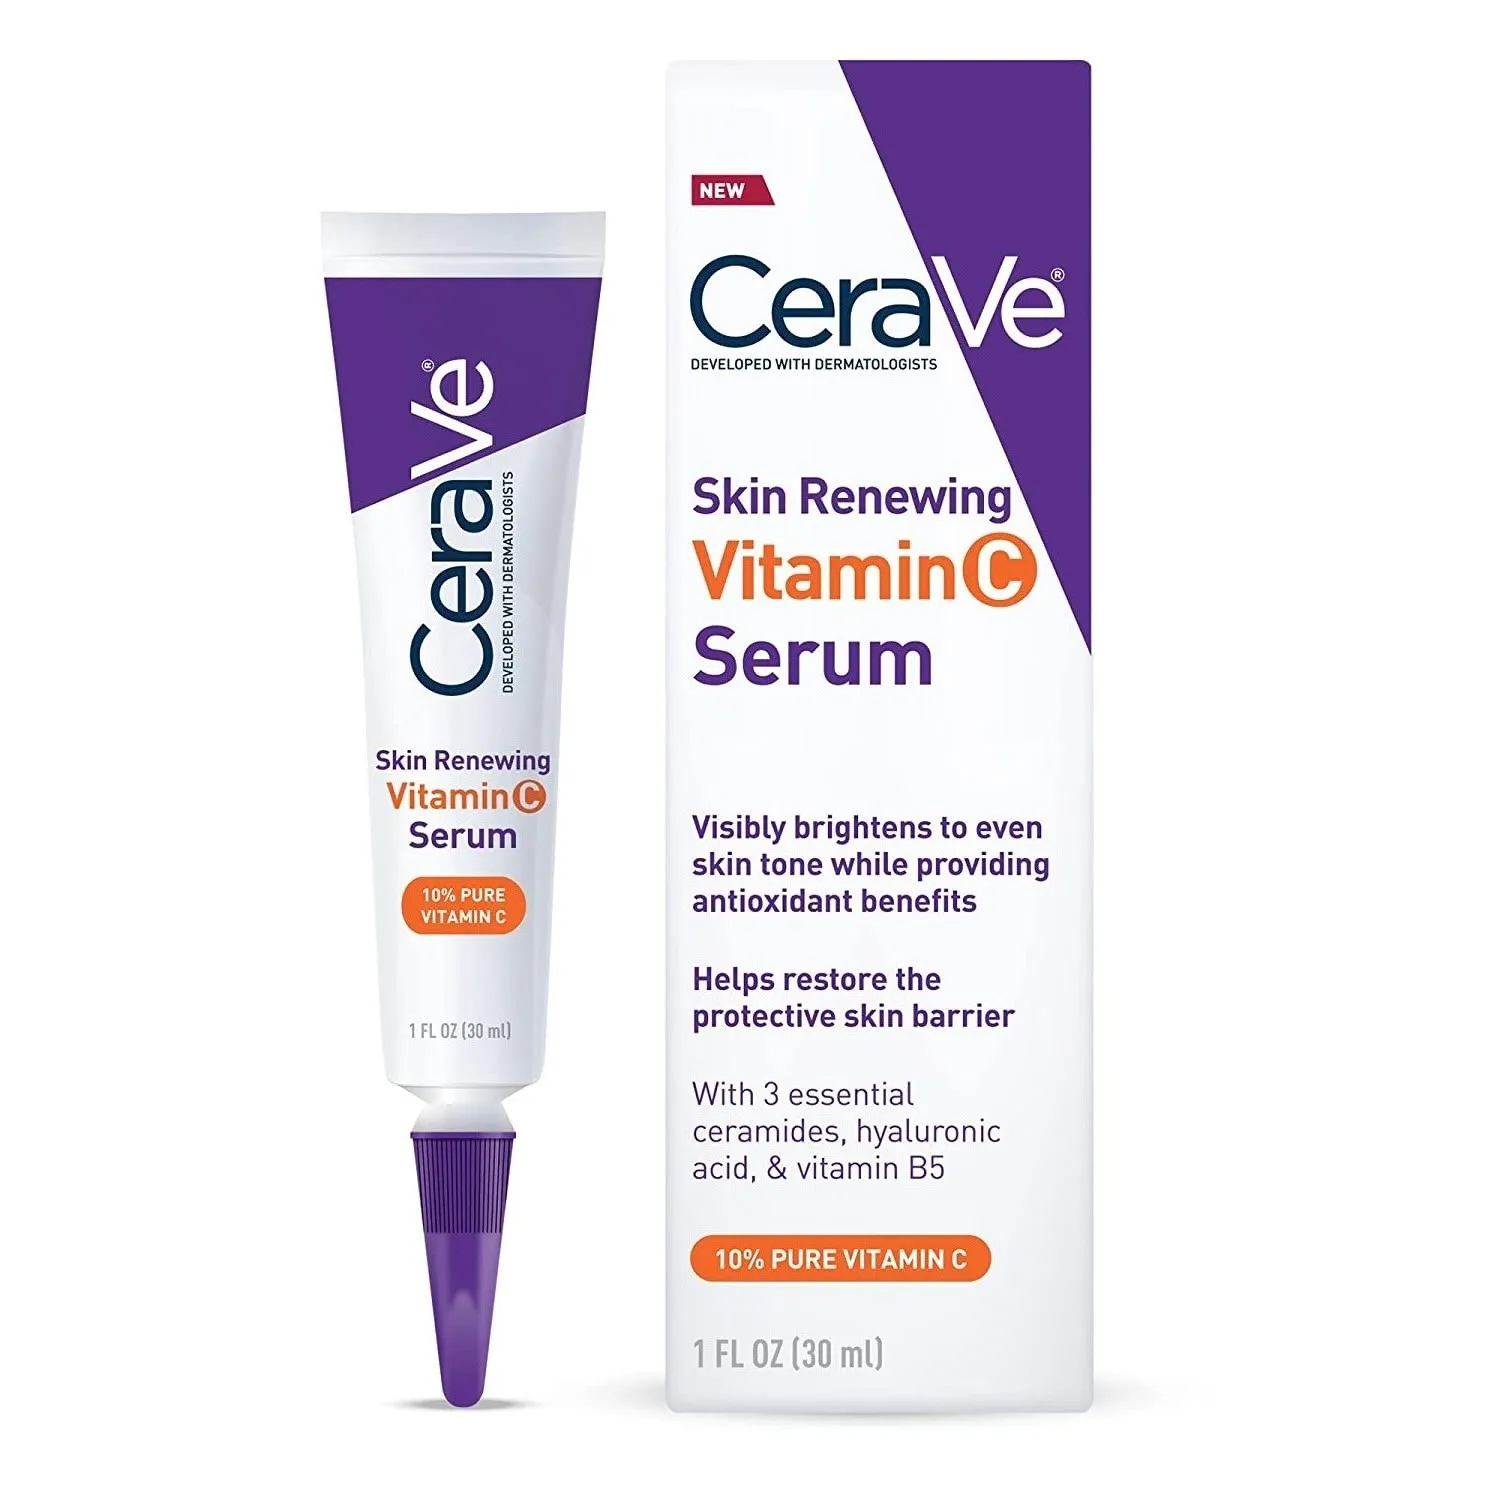 

CeraVe Original Vitamin C Serum Anti-wrinkle And Aging Reduce Wrinkles Lines With Hyaluronic Acid Organic Repair Skin Barrier